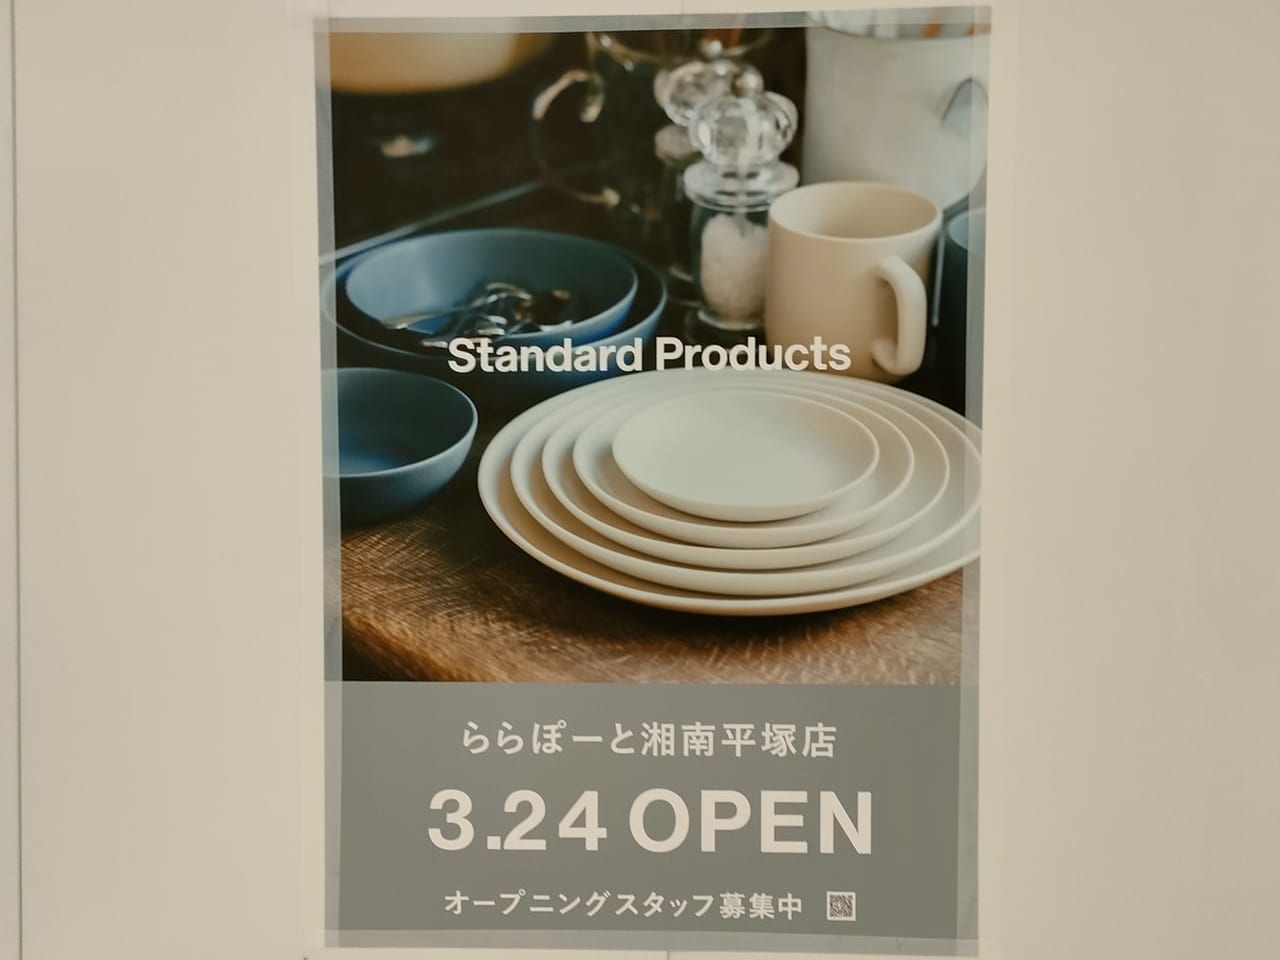 「ららぽーと湘南平塚」に注目のダイソー新ブランド「Standard Products」が3月24日（金）にオープンします！